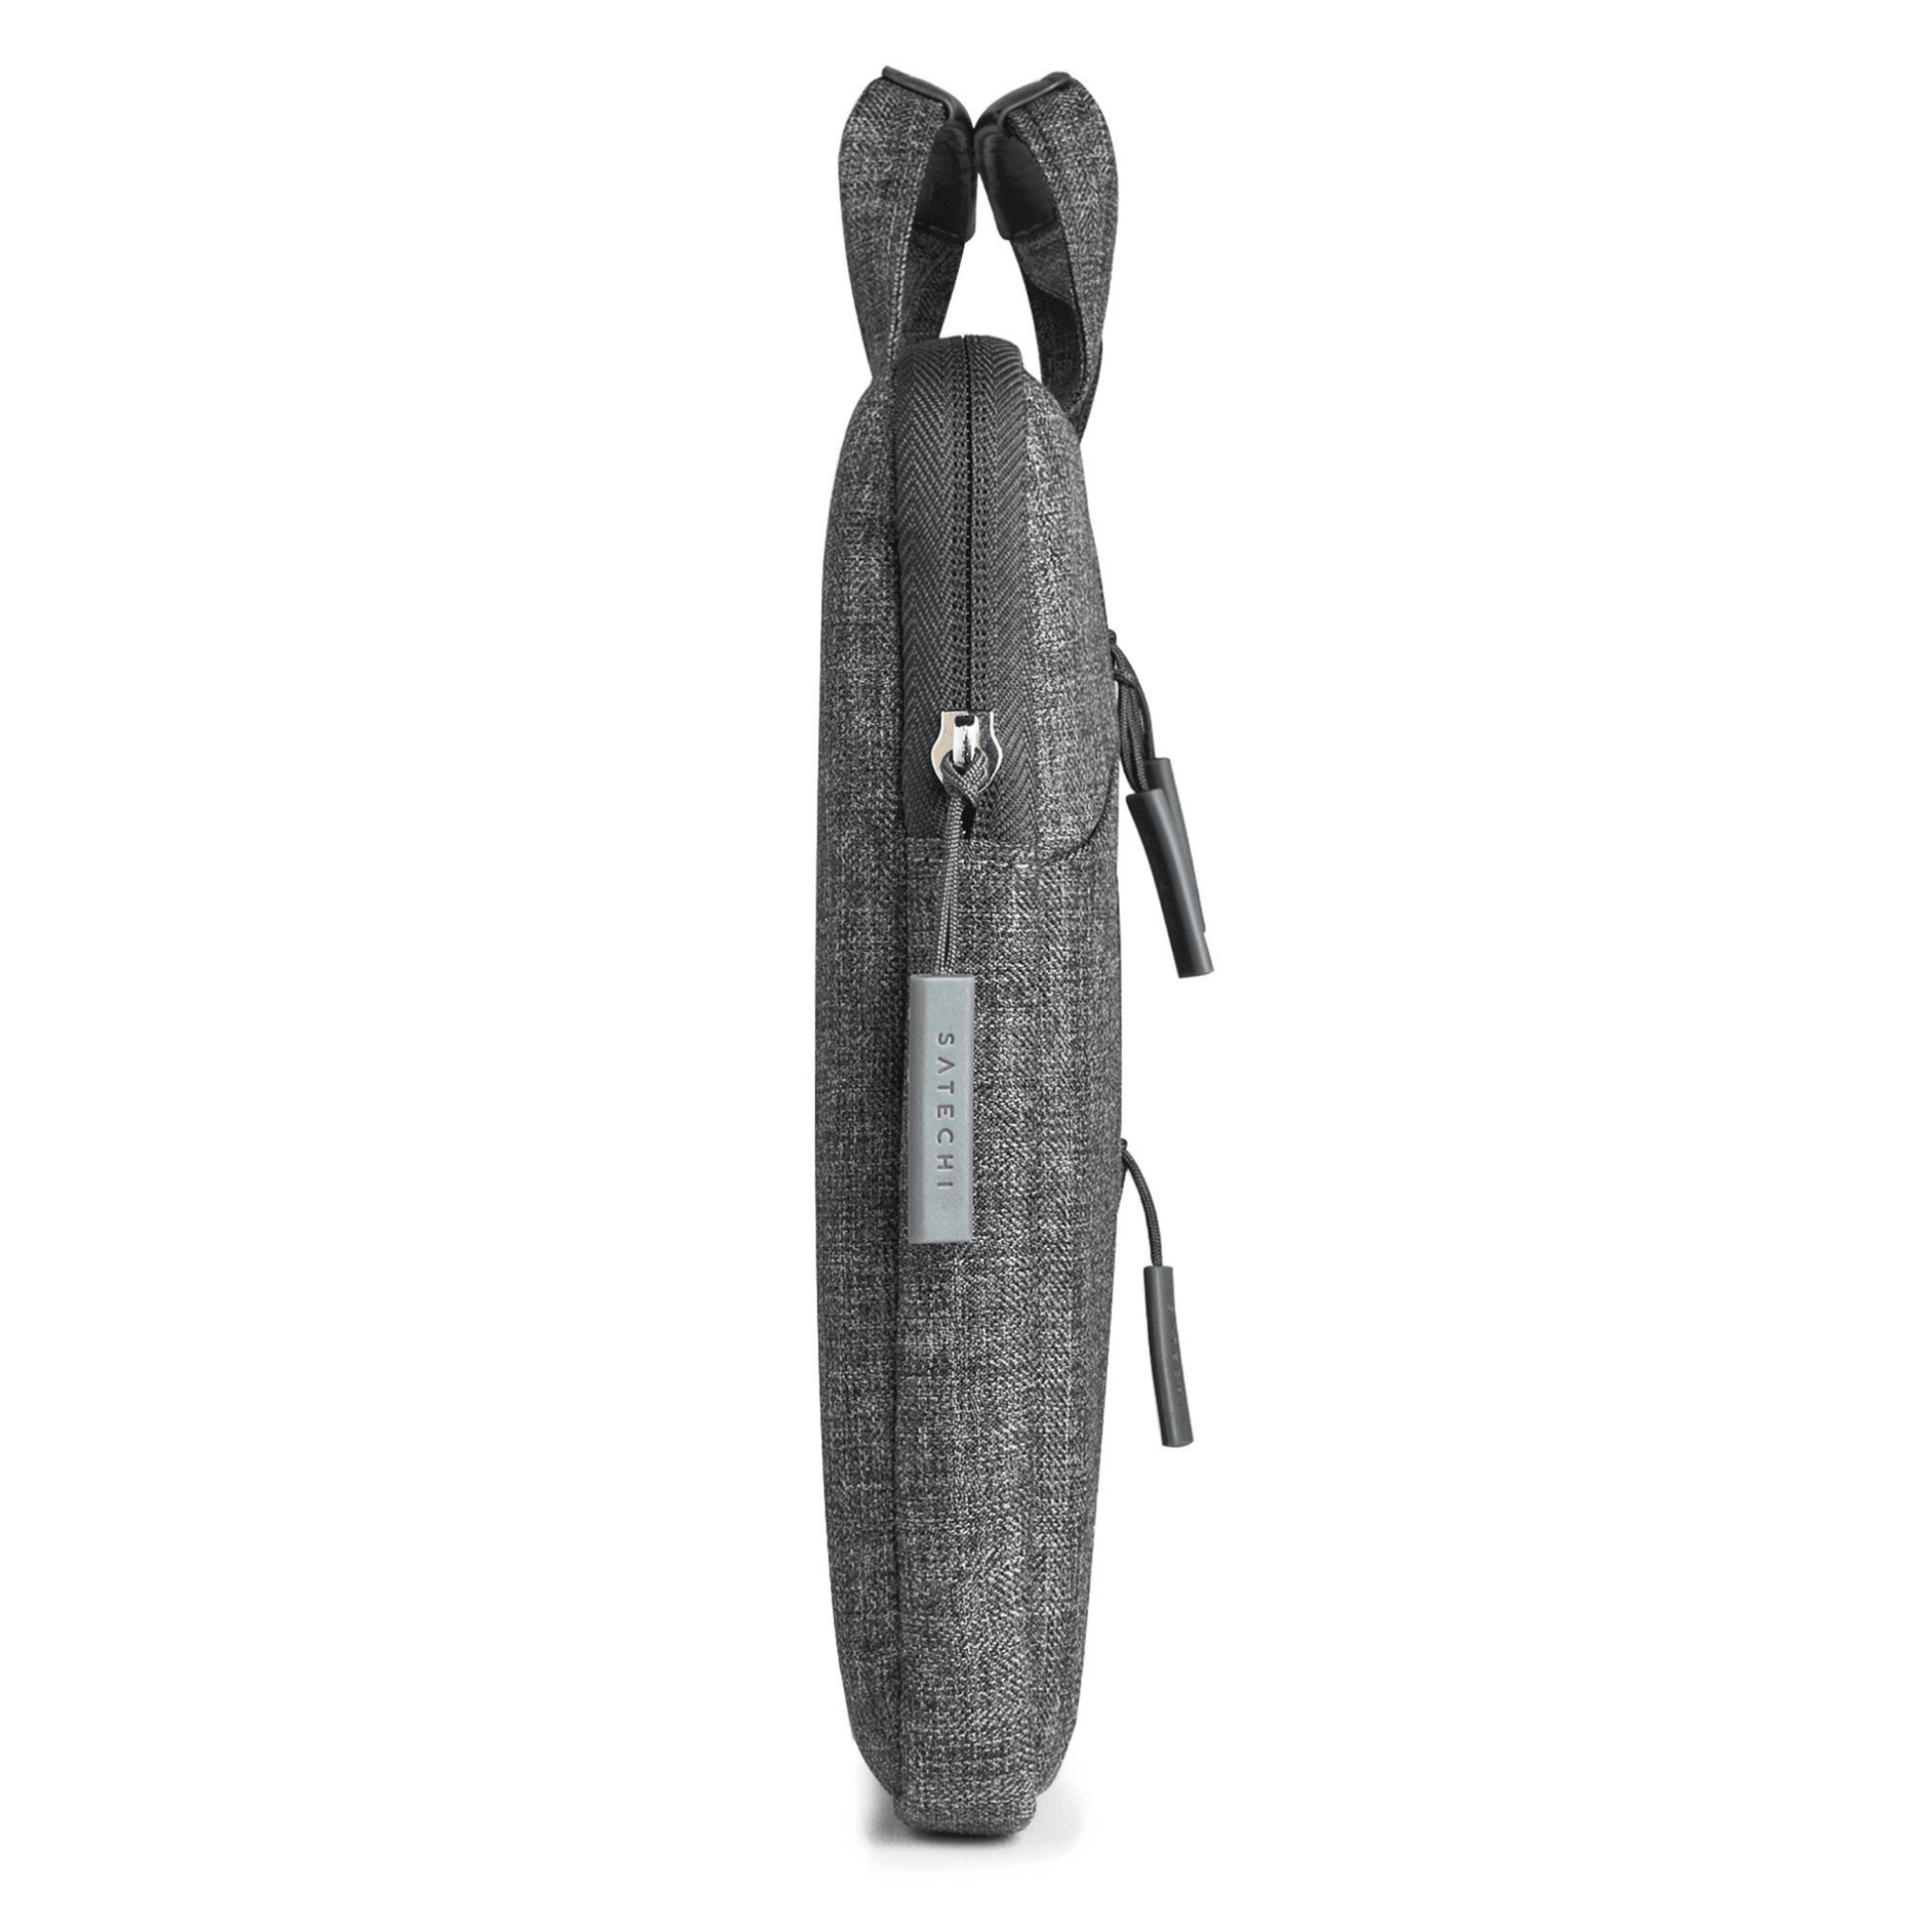 Satechi - Wasserresistente Laptoptasche 13“ mit praktischen Taschen an der Vorderseite - Grau